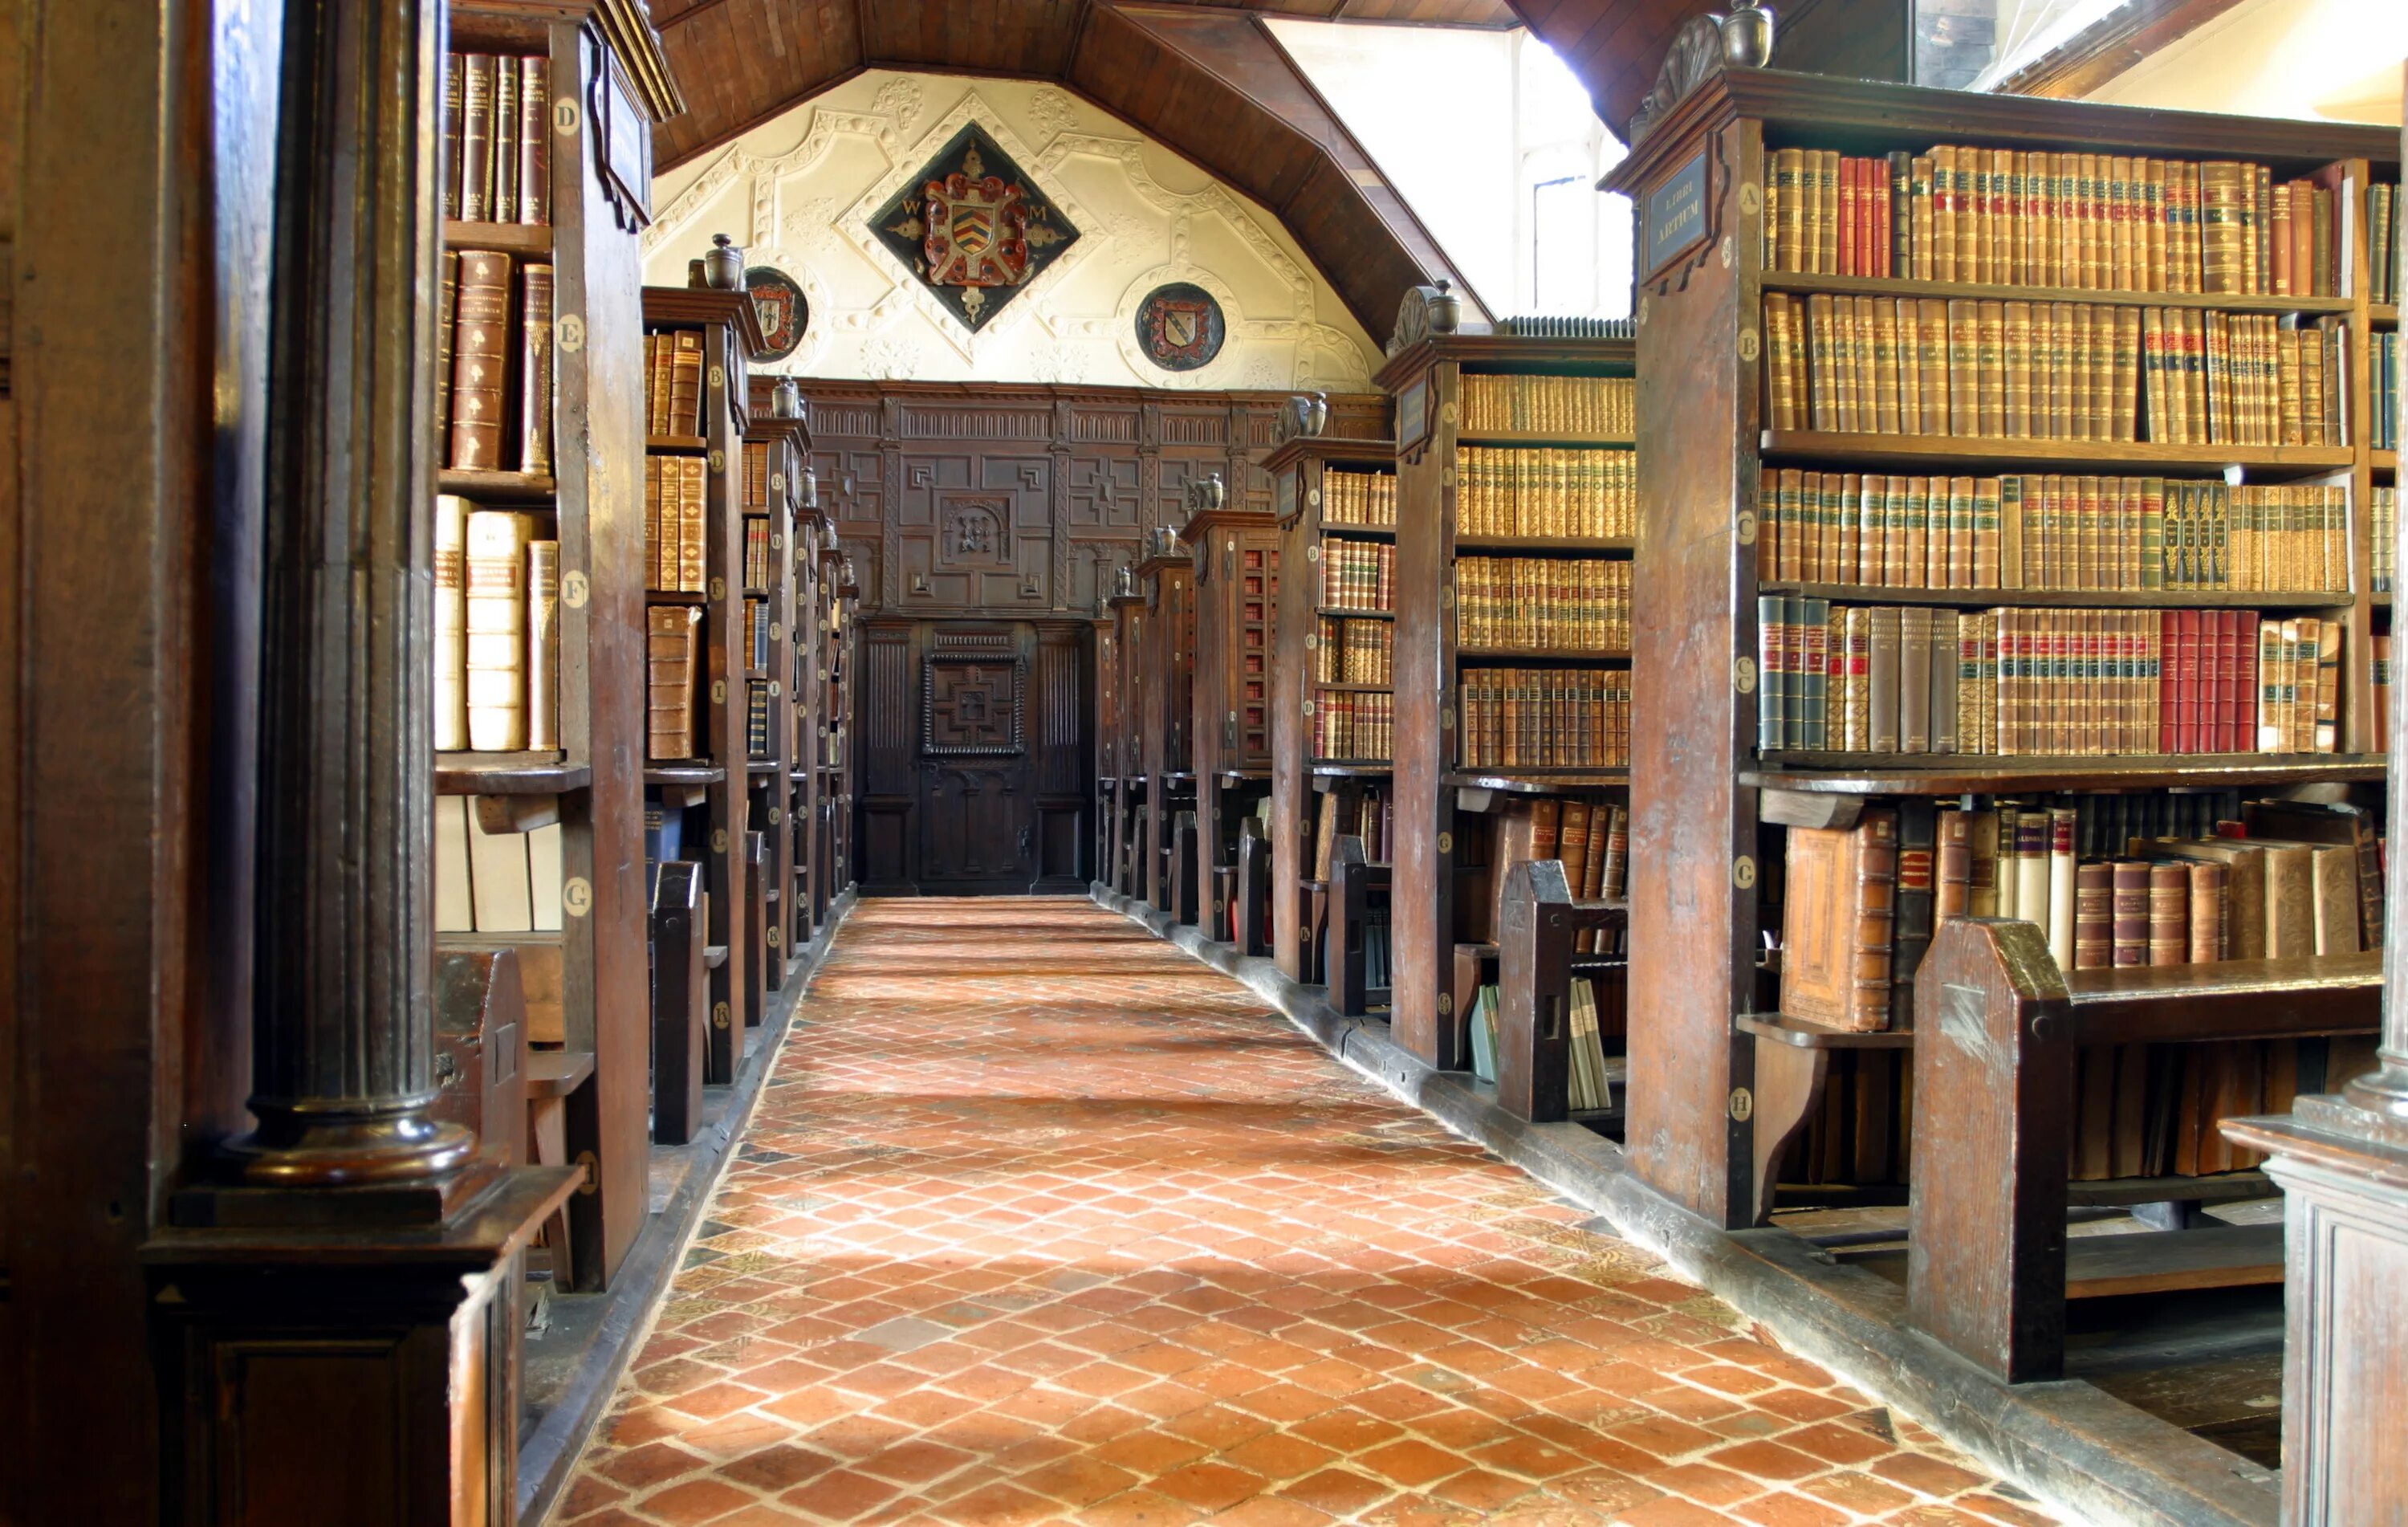 Библиотека без людей. Мертон-колледж (Оксфорд). Библиотека Тринити-колледжа, Дублин, Ирландия. Библиотека Тринити-колледжа в Дублине. Оксфордский университет библиотека.